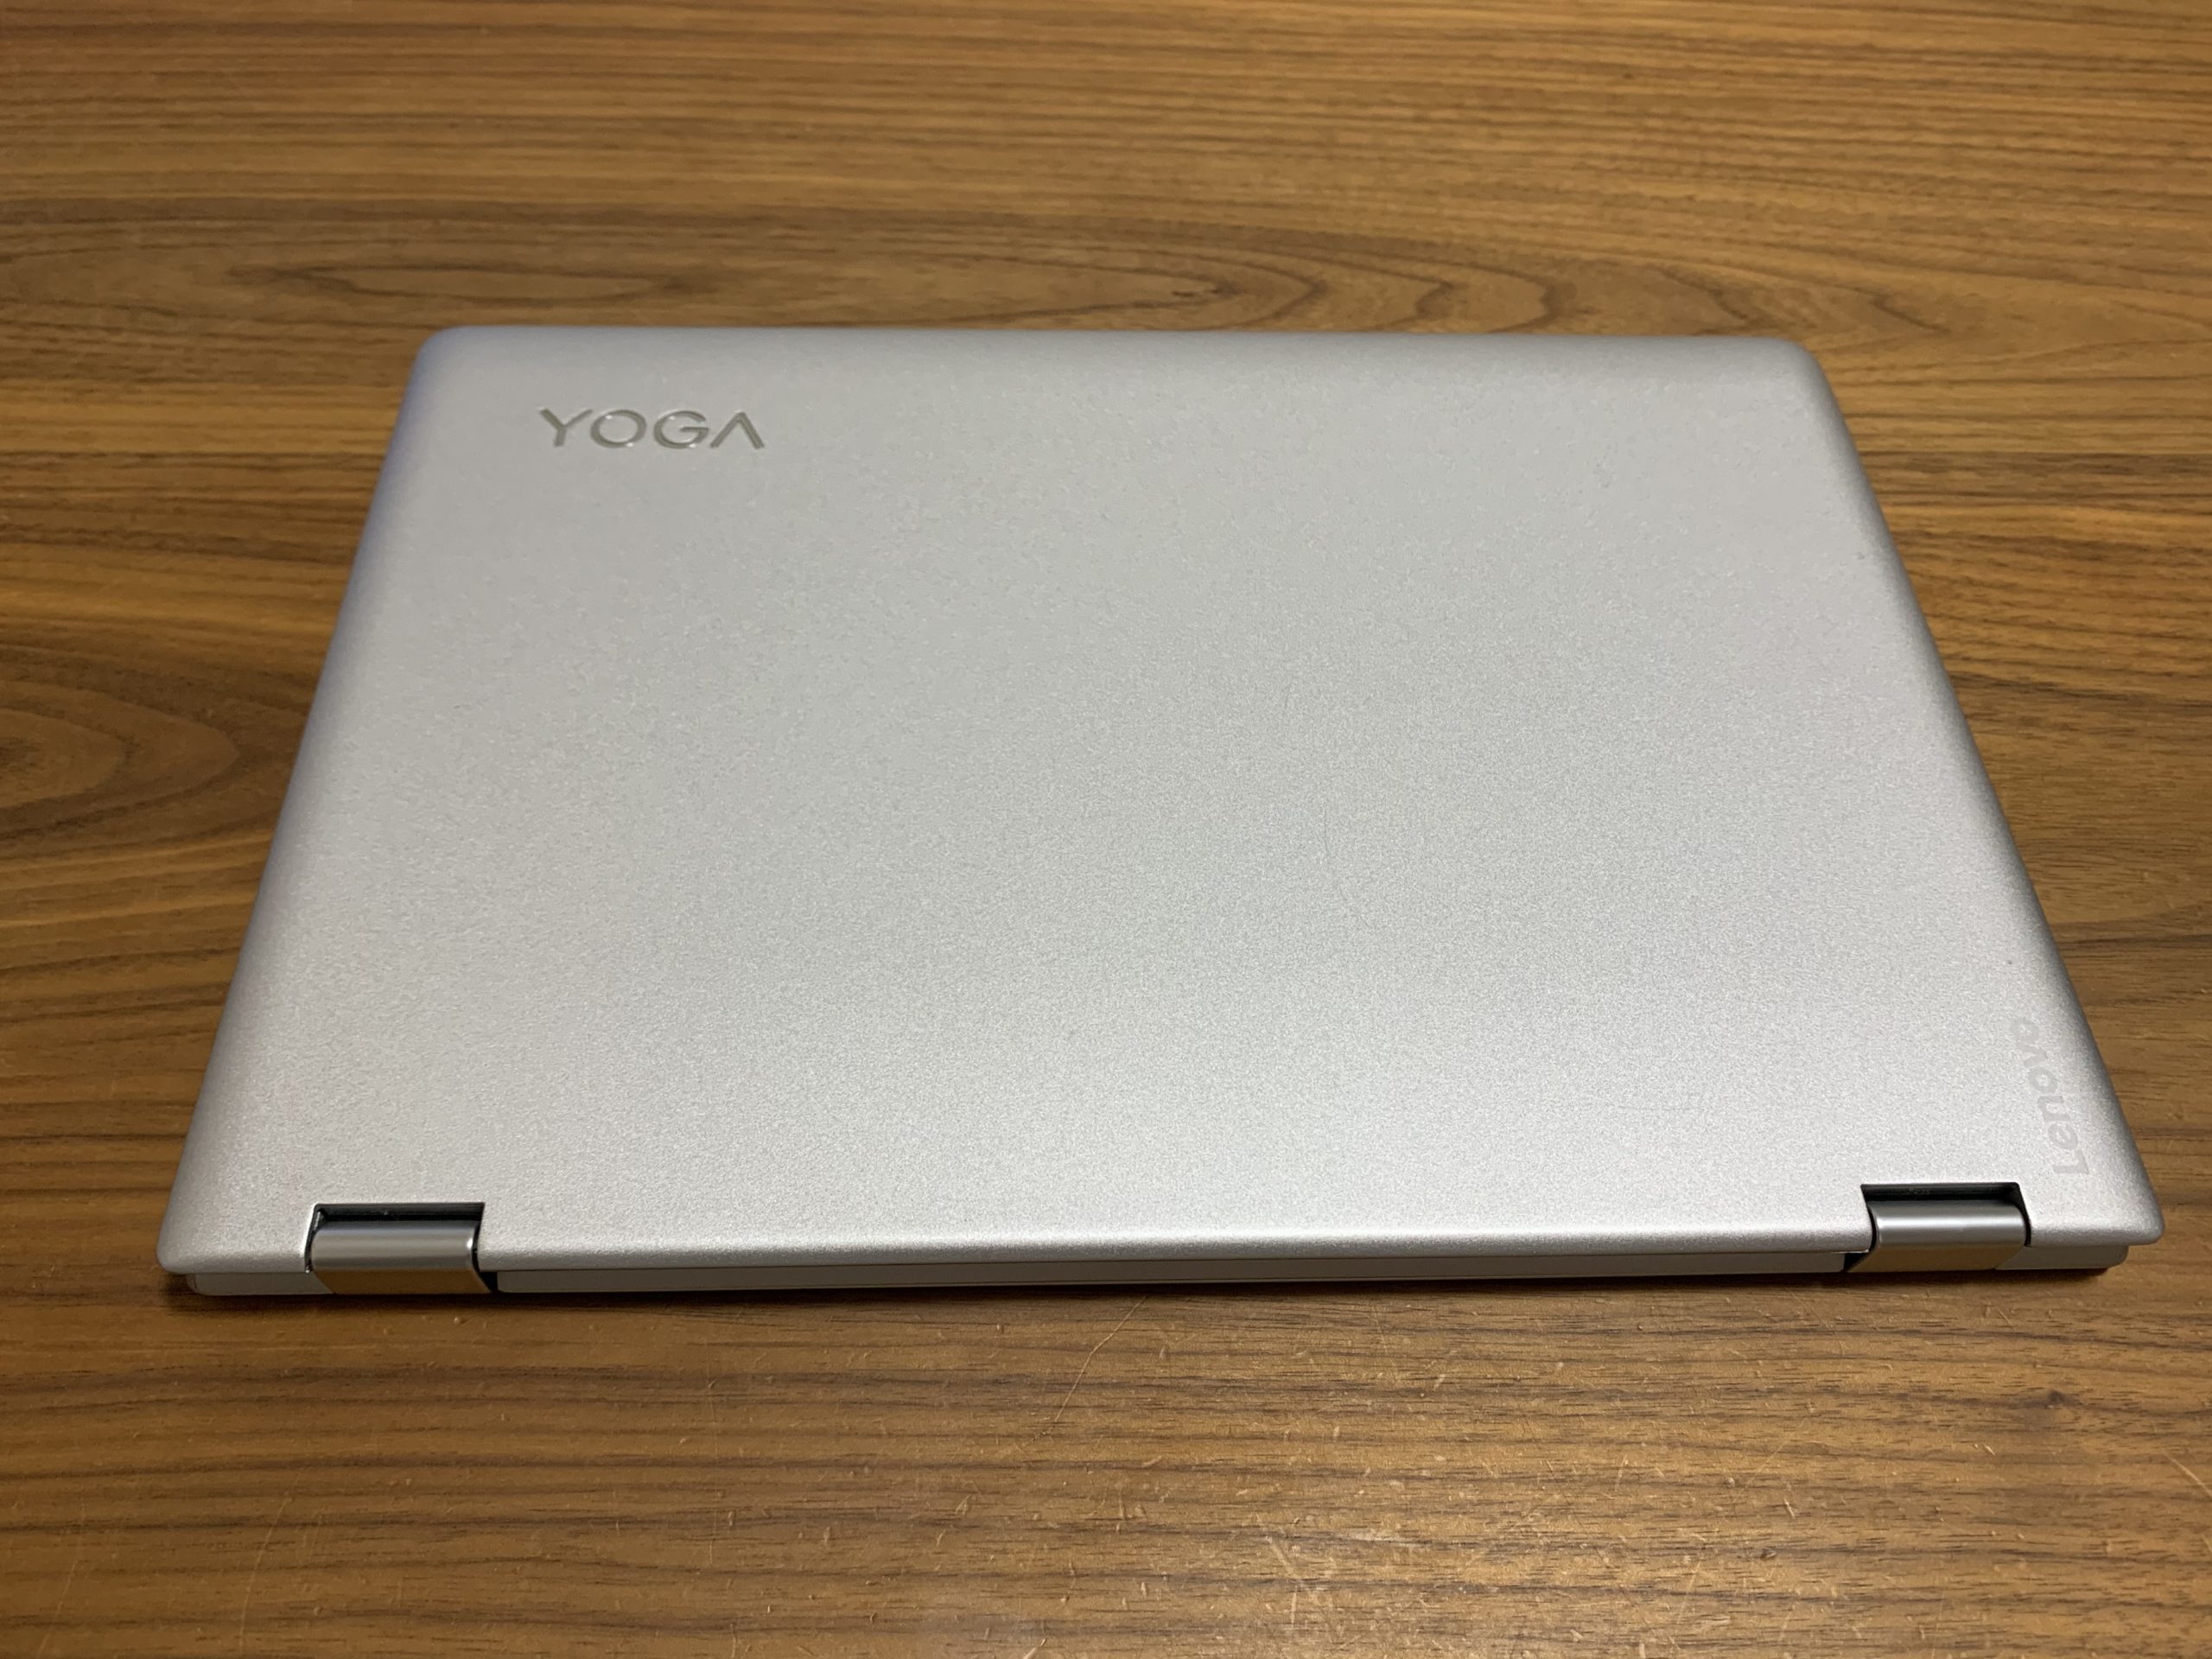 LENOVO YOGA710 名機 タッチパネル i5 256GB 8GB